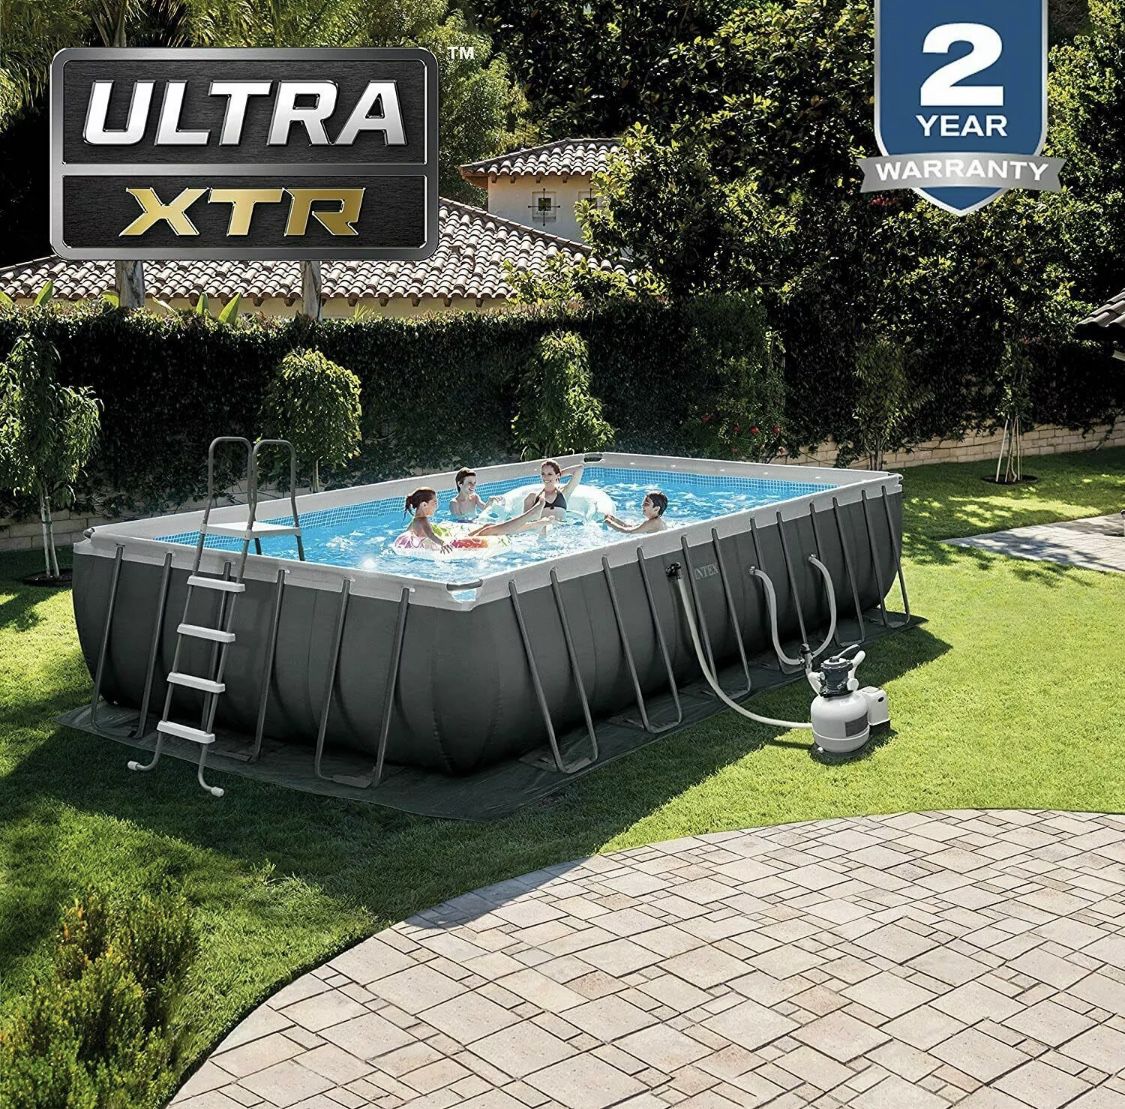 Intex ULTRA XTR 24ft x 52 Family Swimming Pool (NEW IN BOX)